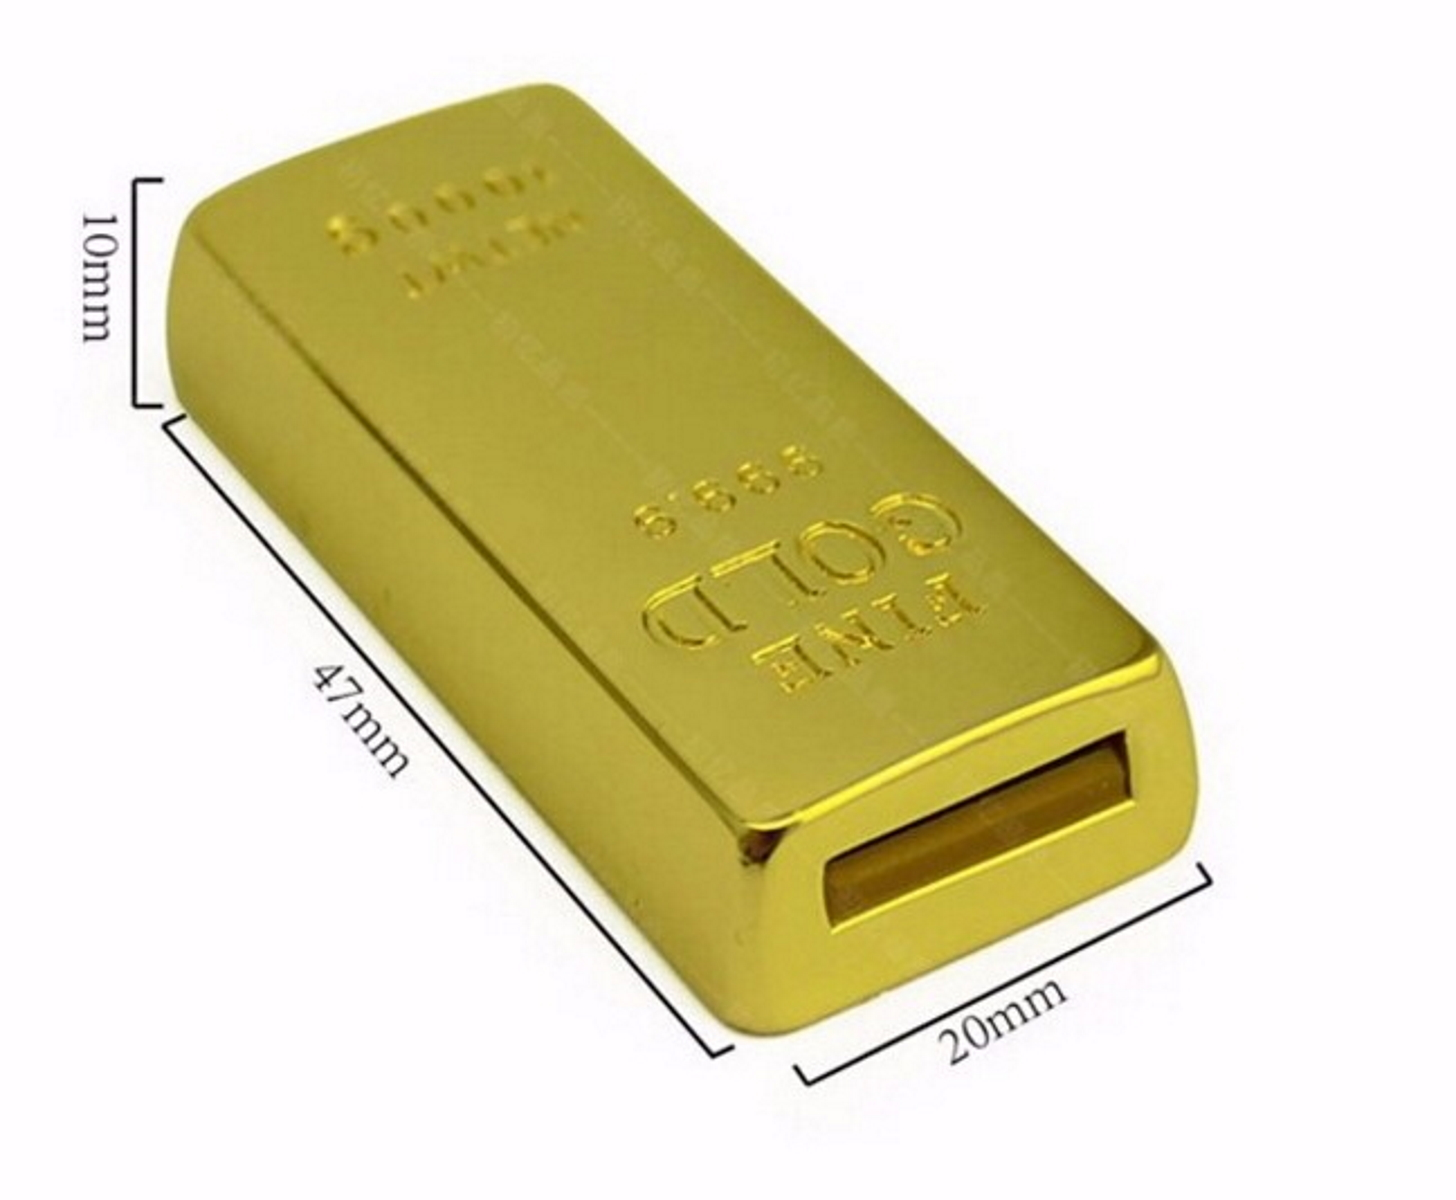 USB GERMANY (Gold, Goldbarren USB-Stick 2 GB) ®